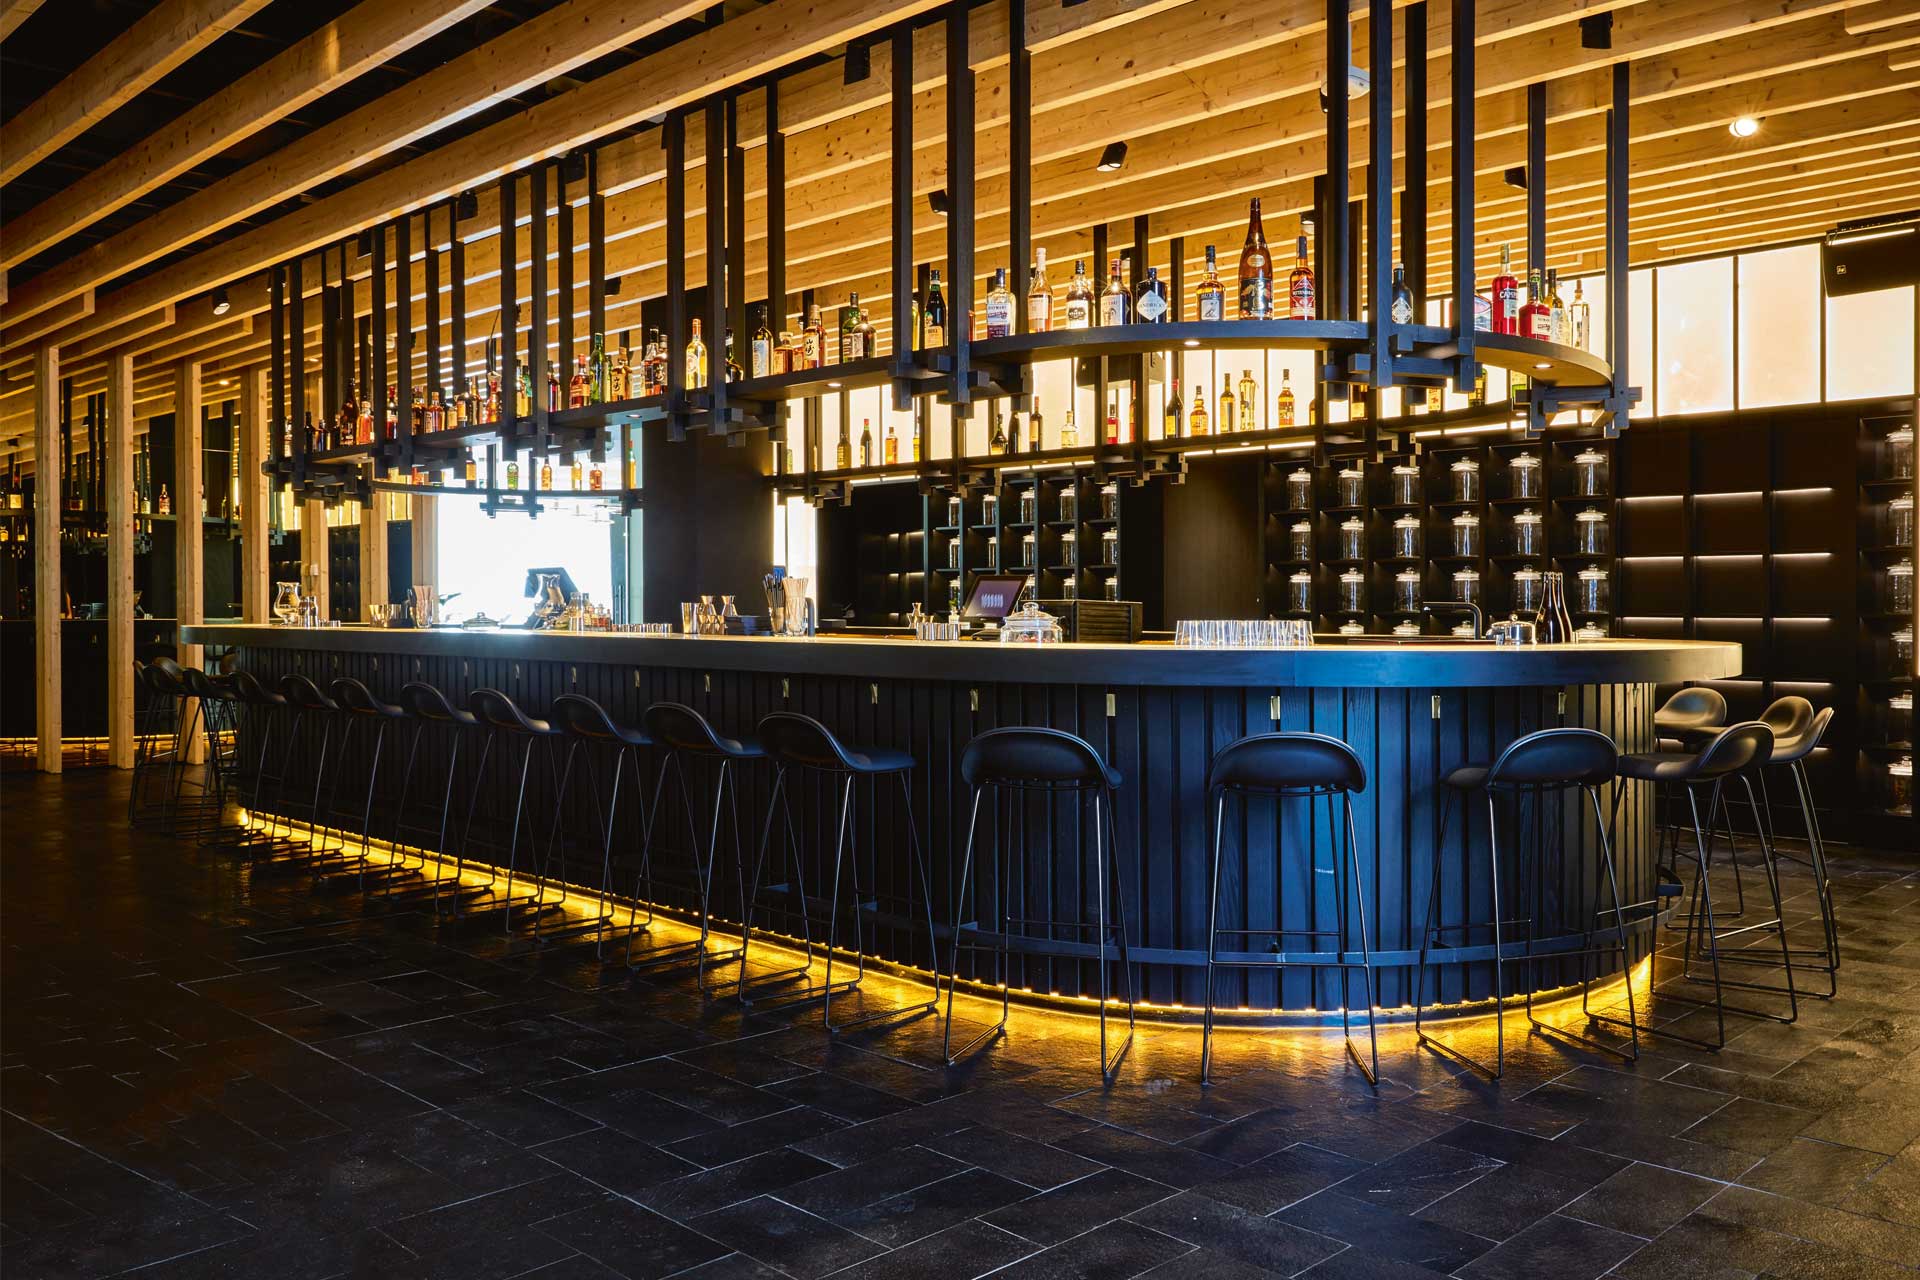 Izakaya Munich is known for its stylish standalone bar area